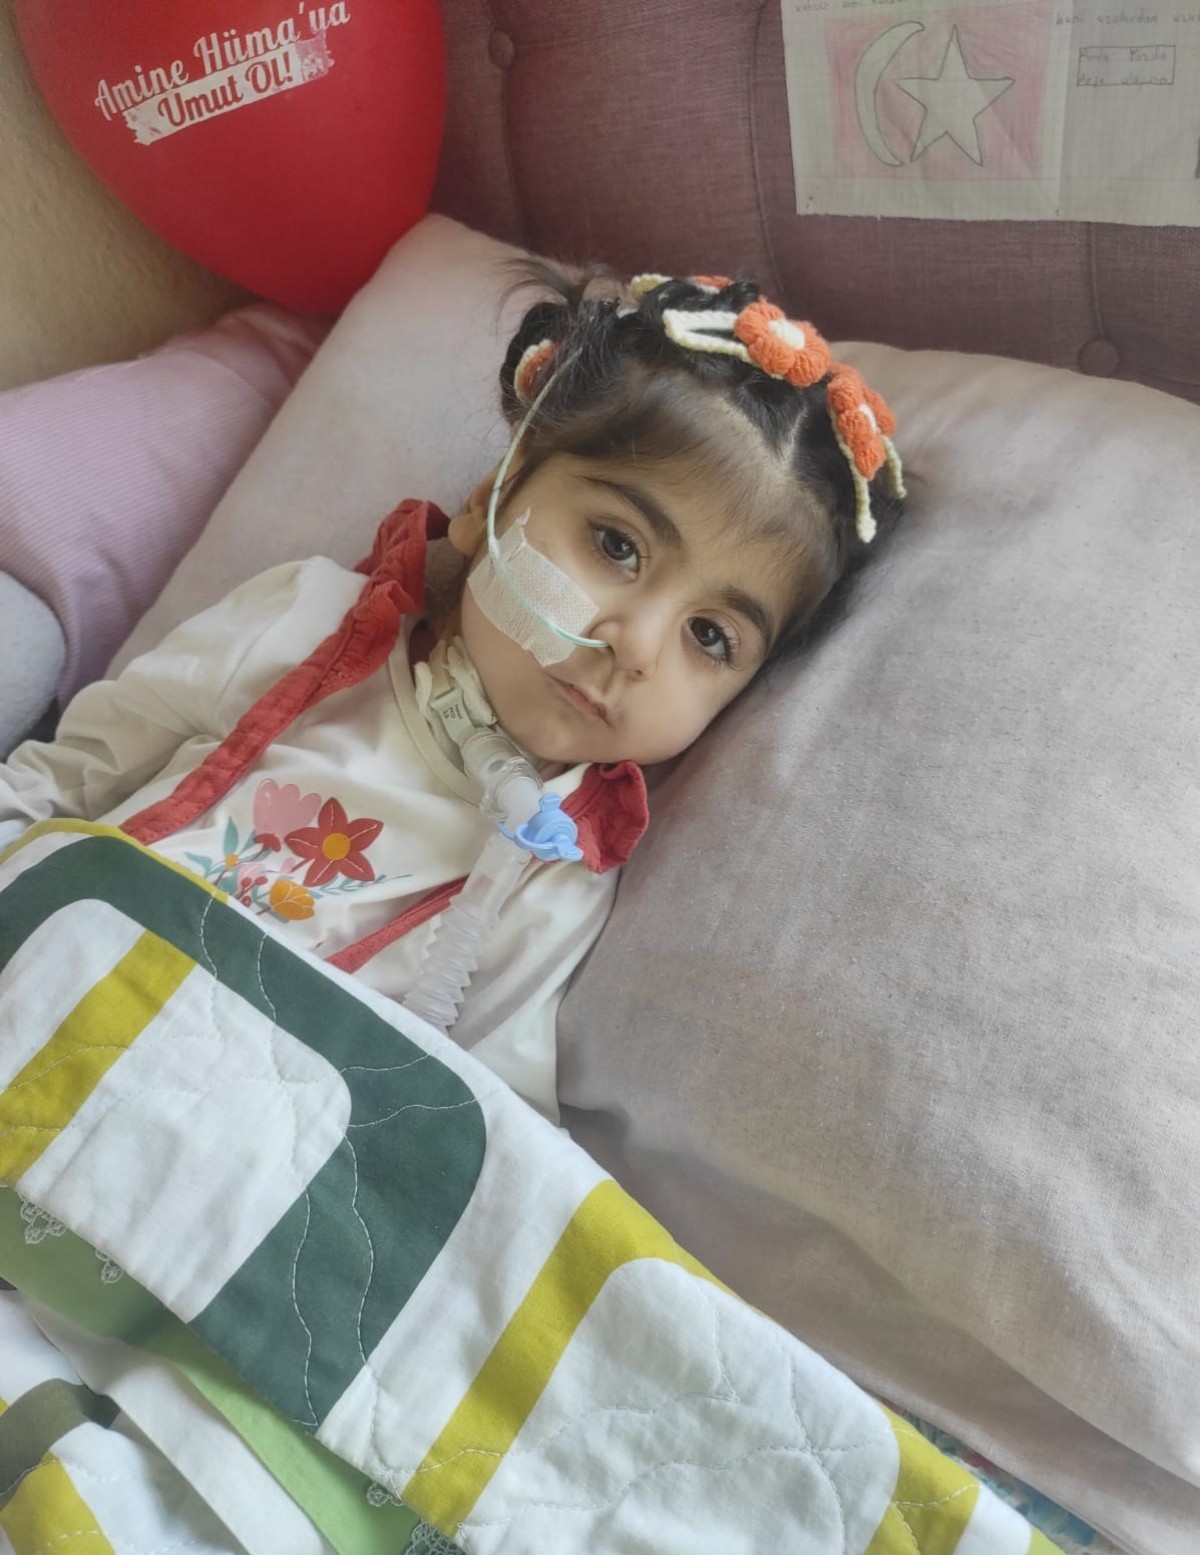 SMA hastası Konyalı Amine Hüma bebek, tedavi için yardımseverlerin desteğini bekliyor